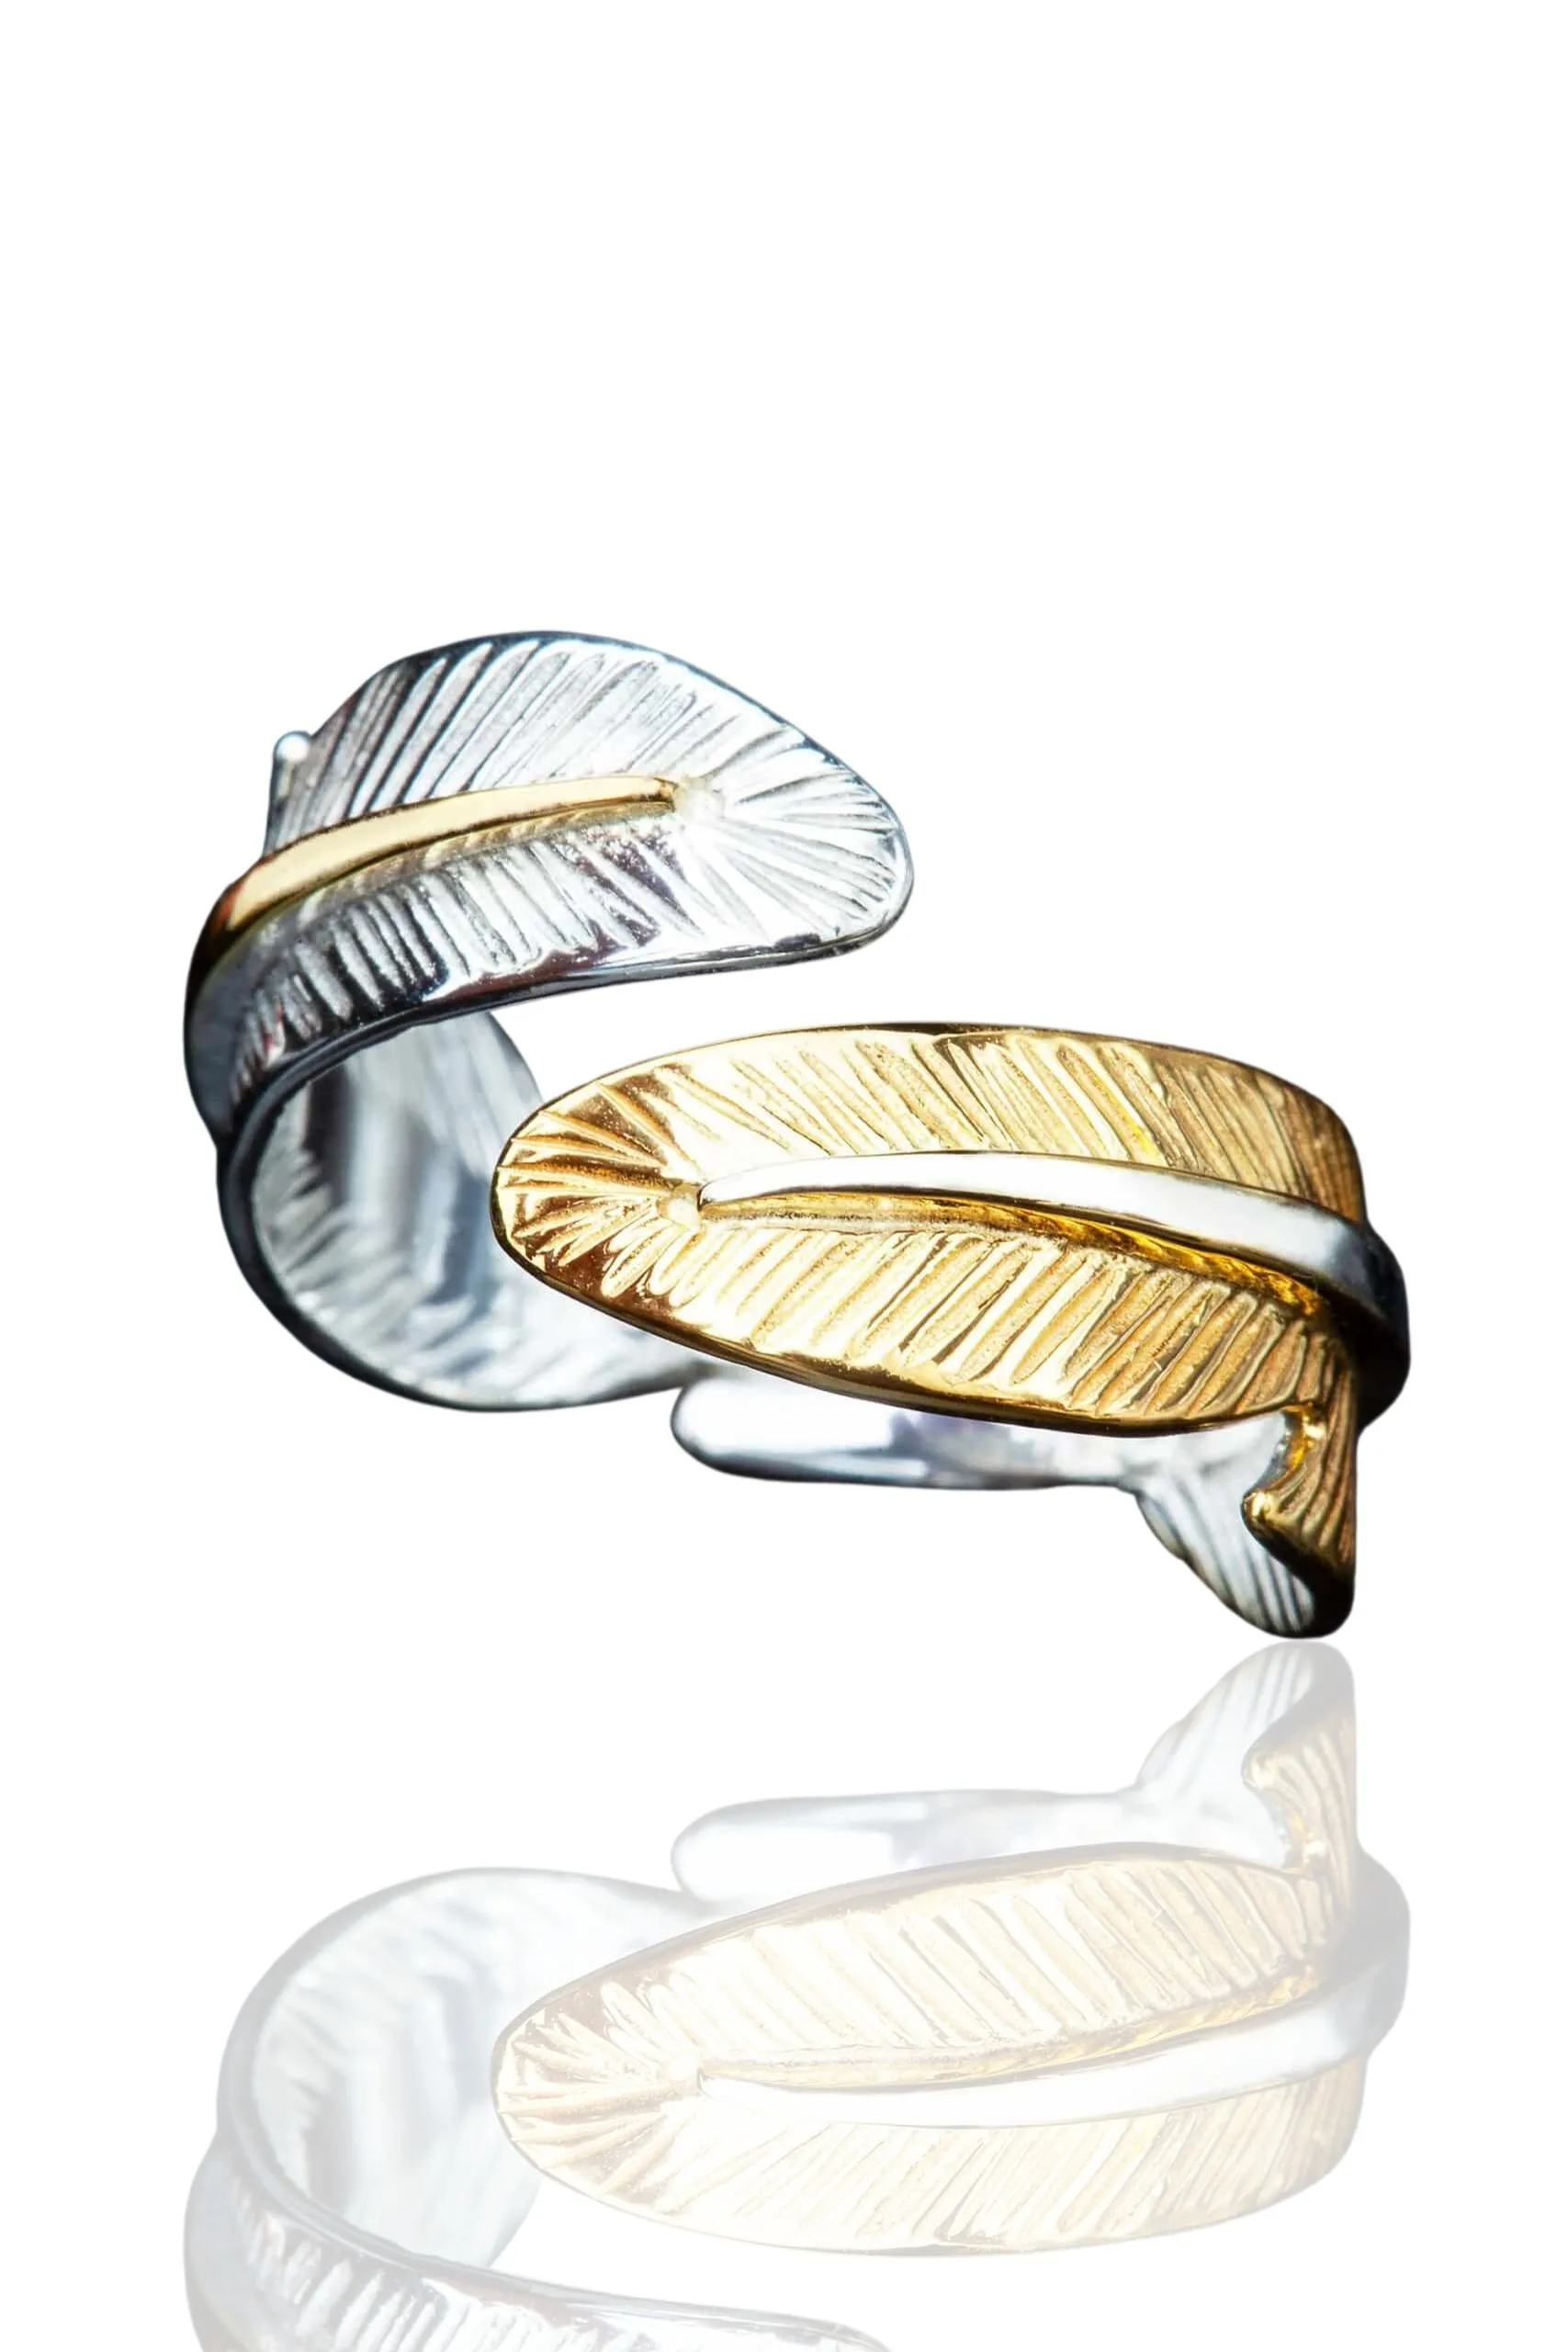 Χειροποίητα κοσμήματα | Ασημένιο δαχτυλίδι φτερά με επιχρύσωση και επιπλατίνωση main